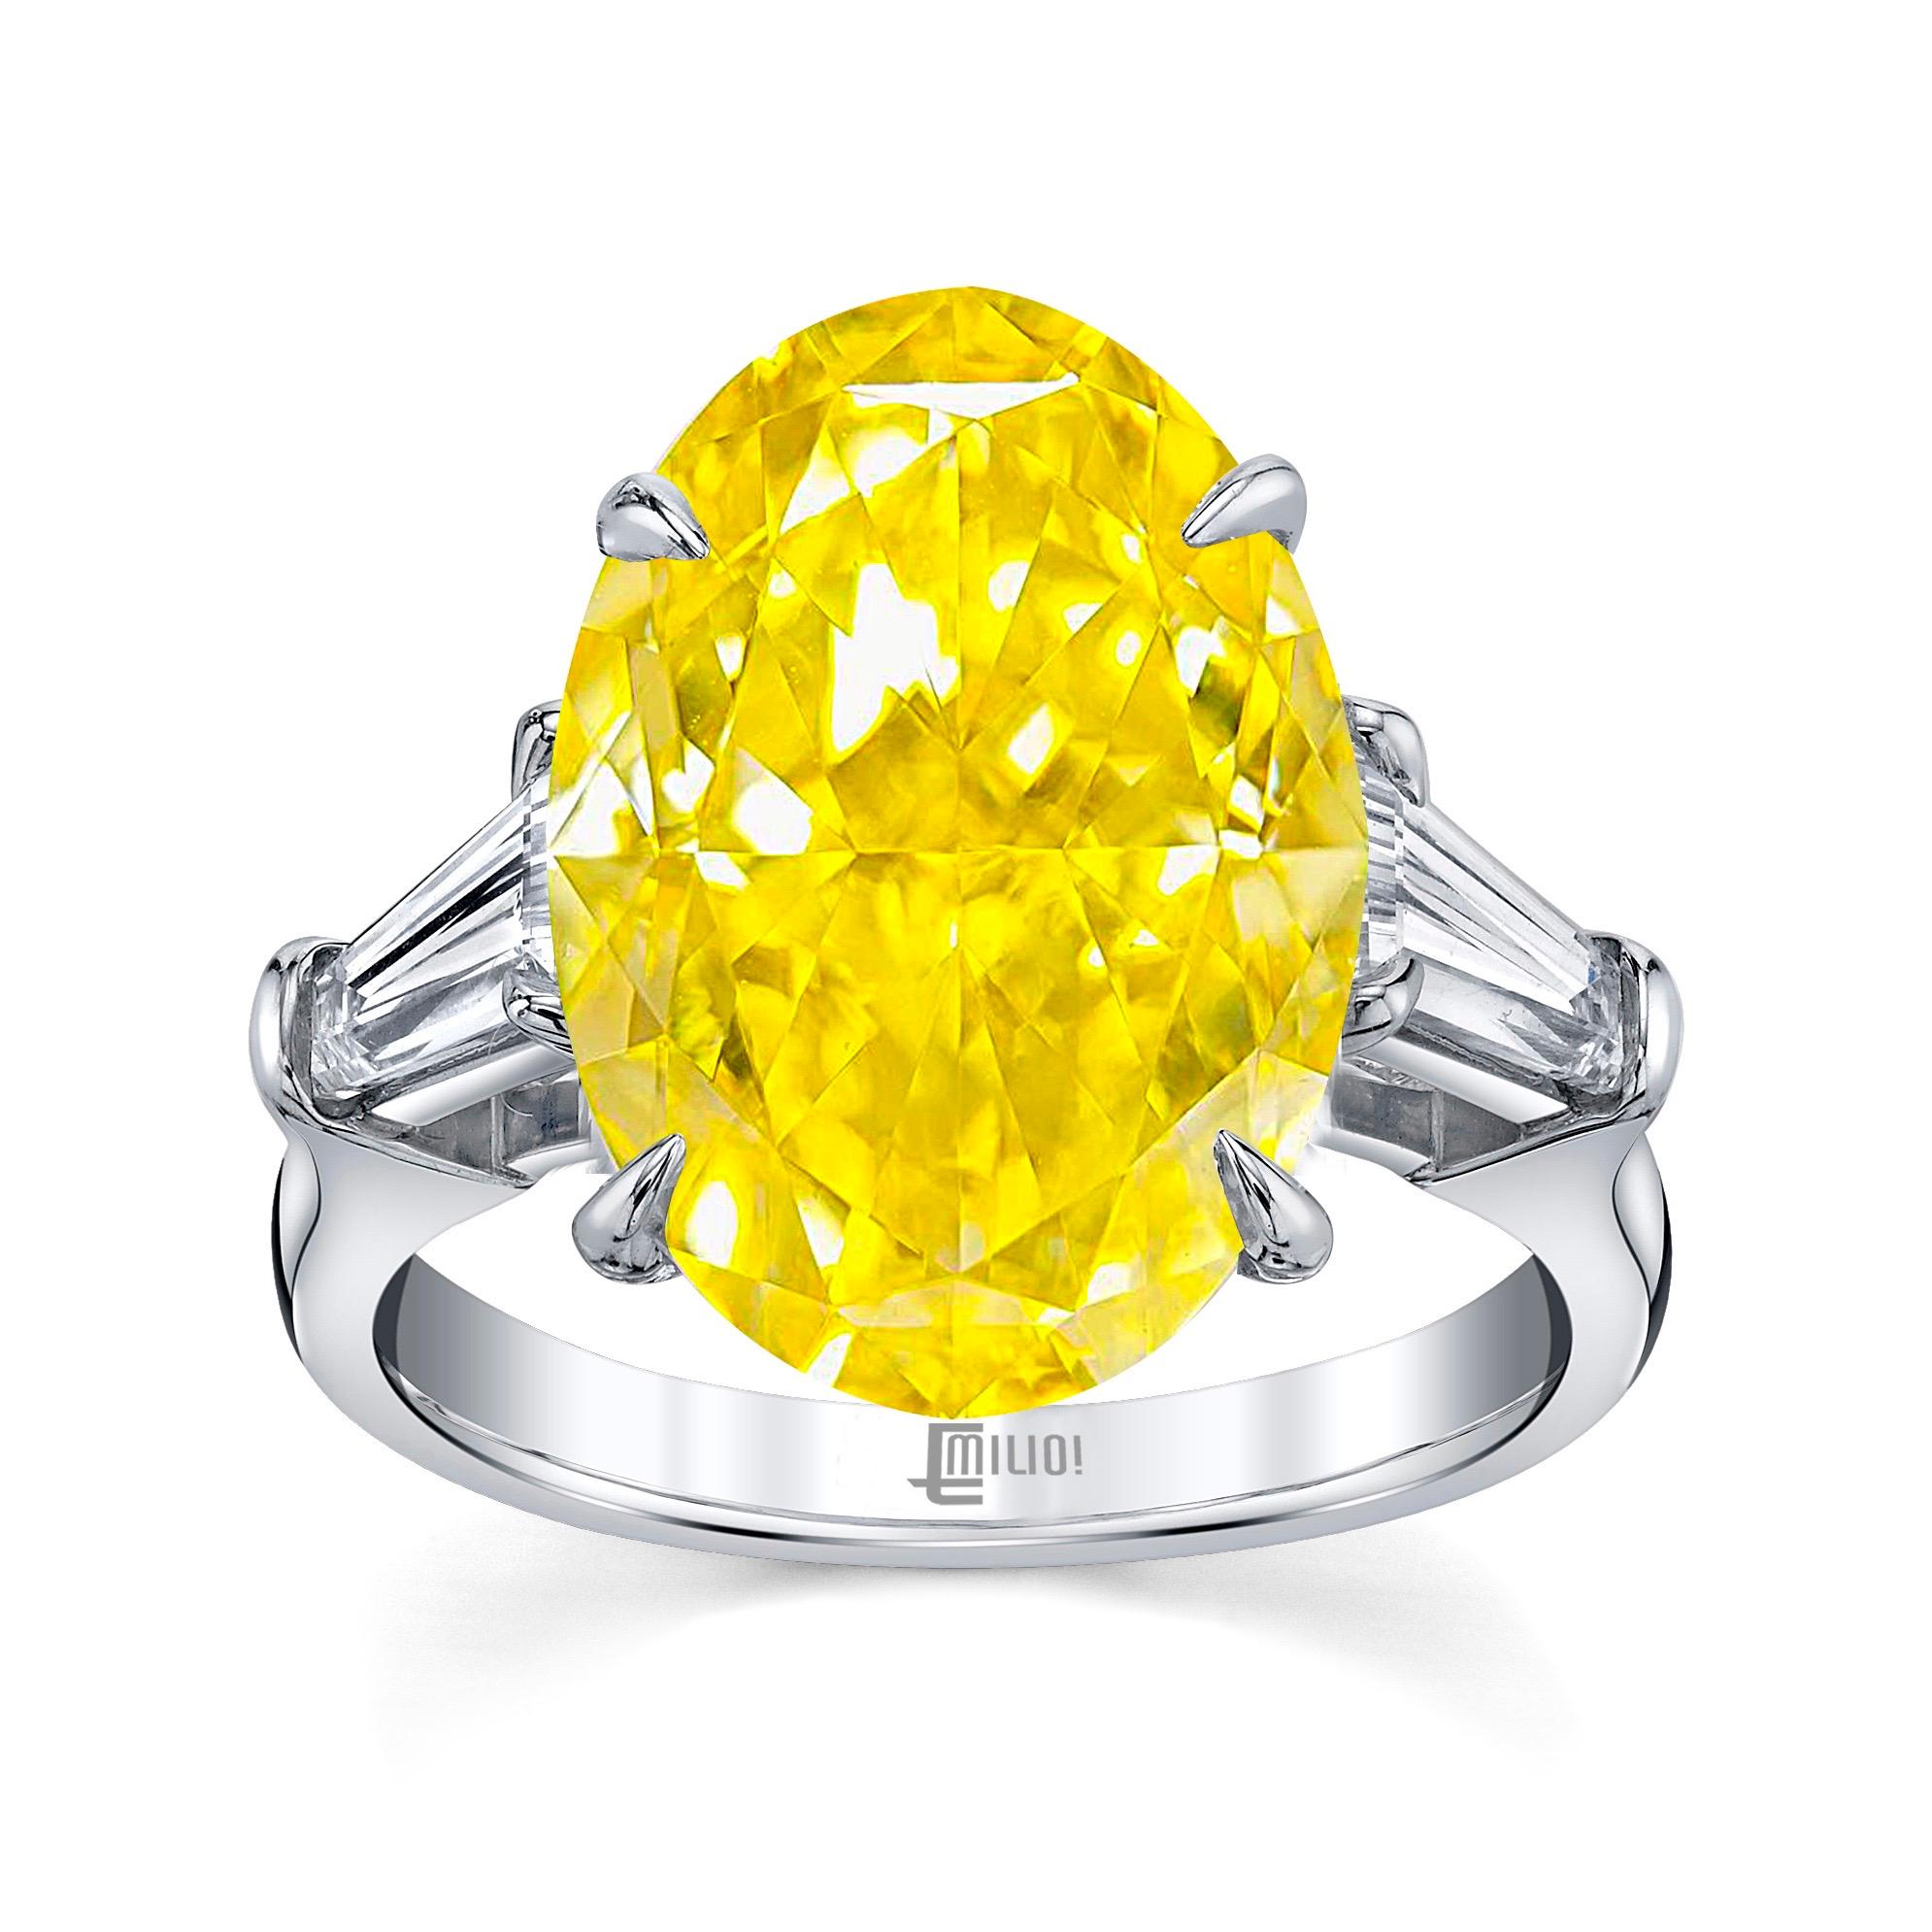 Aus dem Museumstresor von Emilio Jewelry in der berühmten New Yorker Fifth Avenue:
Mit einem prächtigen zentralen Diamanten. Ein GIA-zertifizierter ovaler Diamant in lebhaftem Gelb ohne Oberton. Vivid ist die bestmögliche Einstufung der